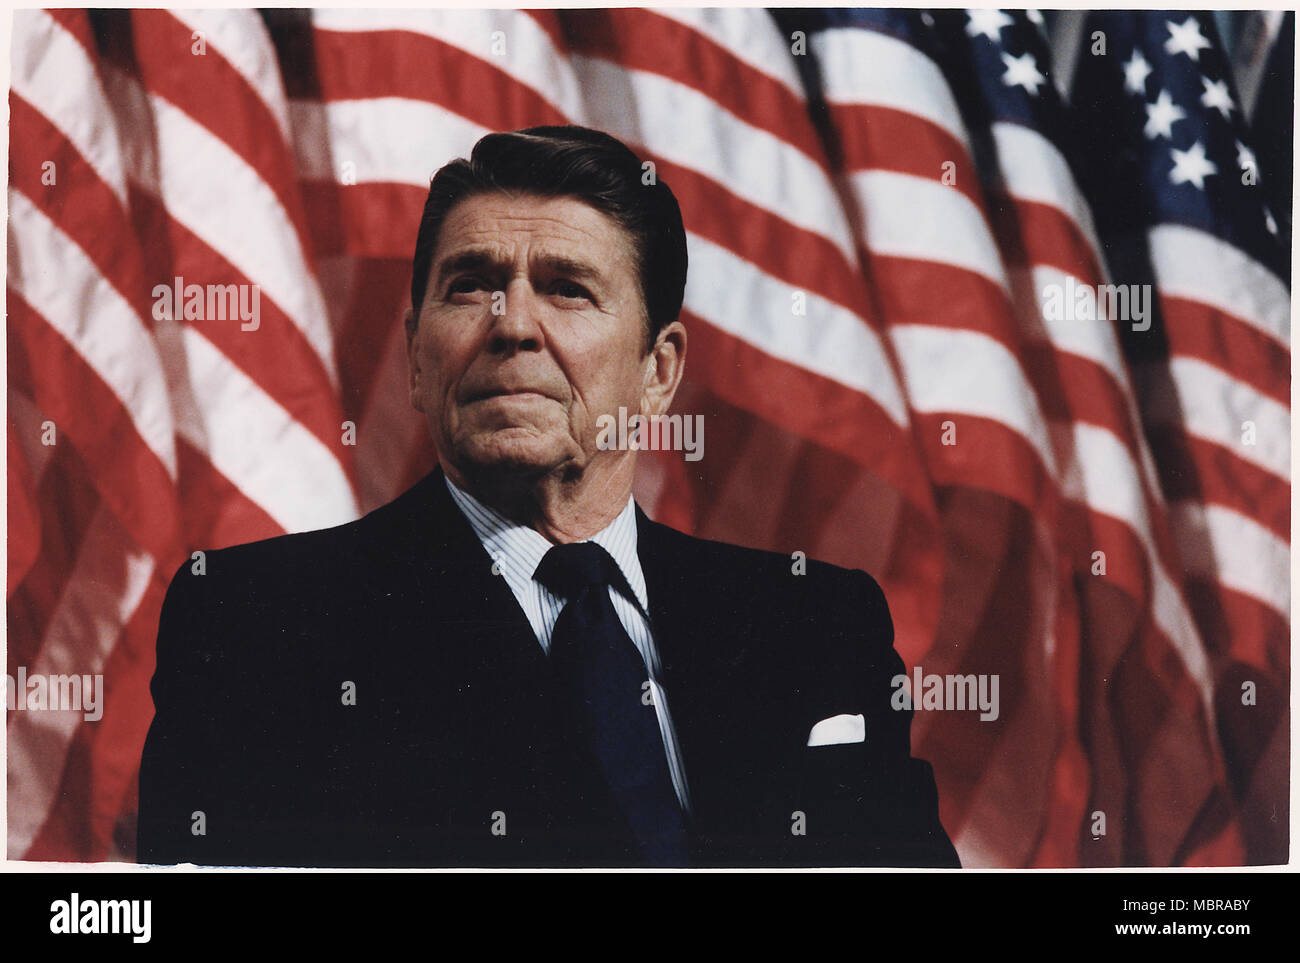 Le président Ronald Reagan parle de la tribune présidentielle devant une rangée de drapeaux américains Banque D'Images